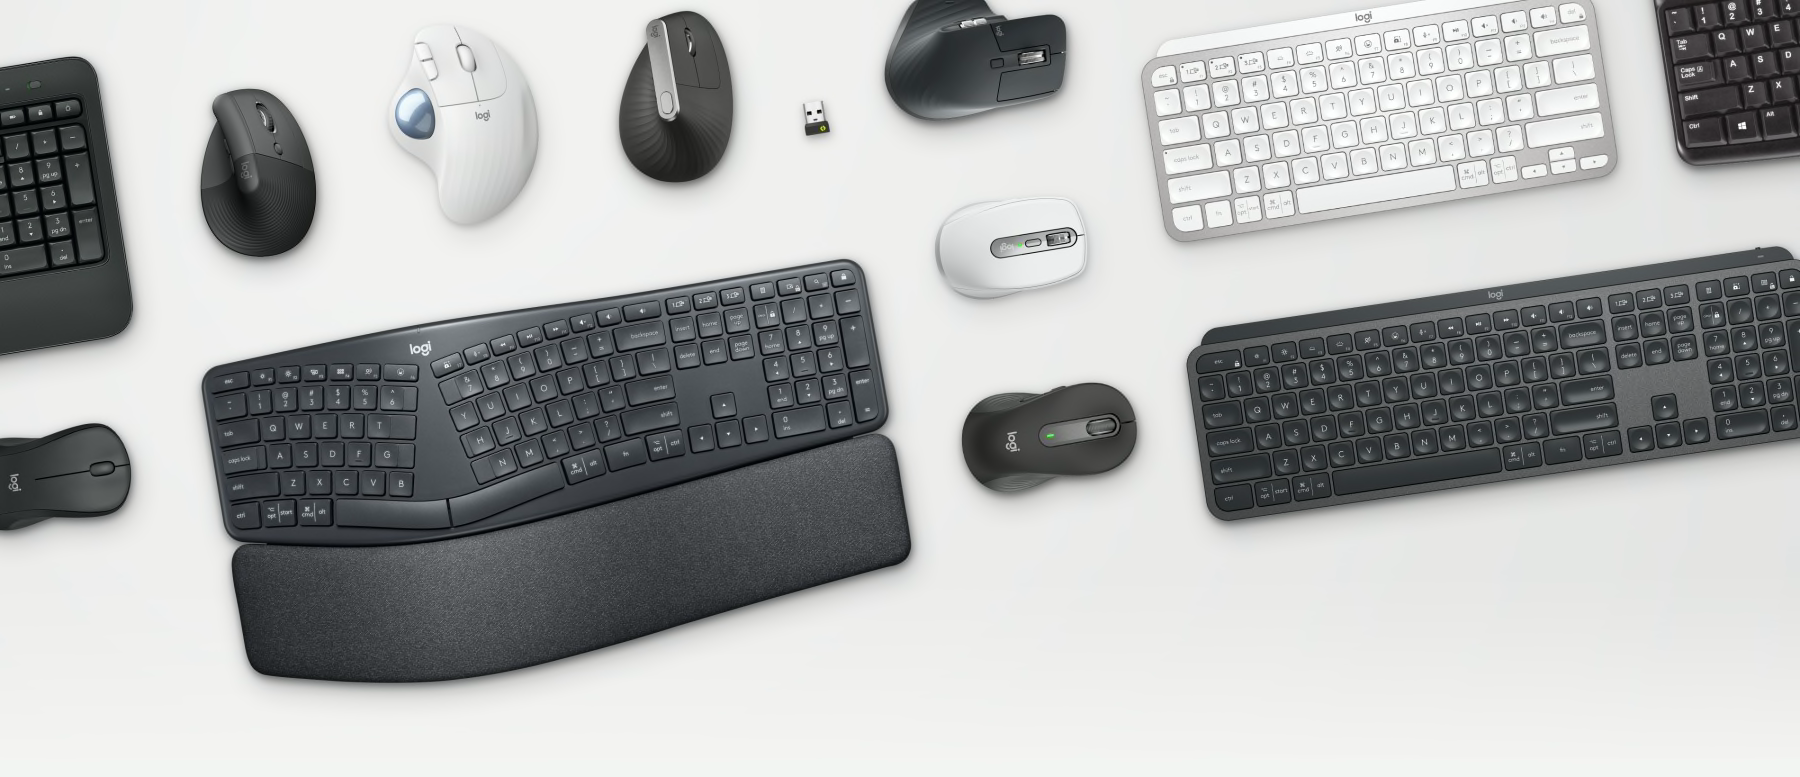 Narzędzia biznesowe – myszy i klawiatury Ergo na stole